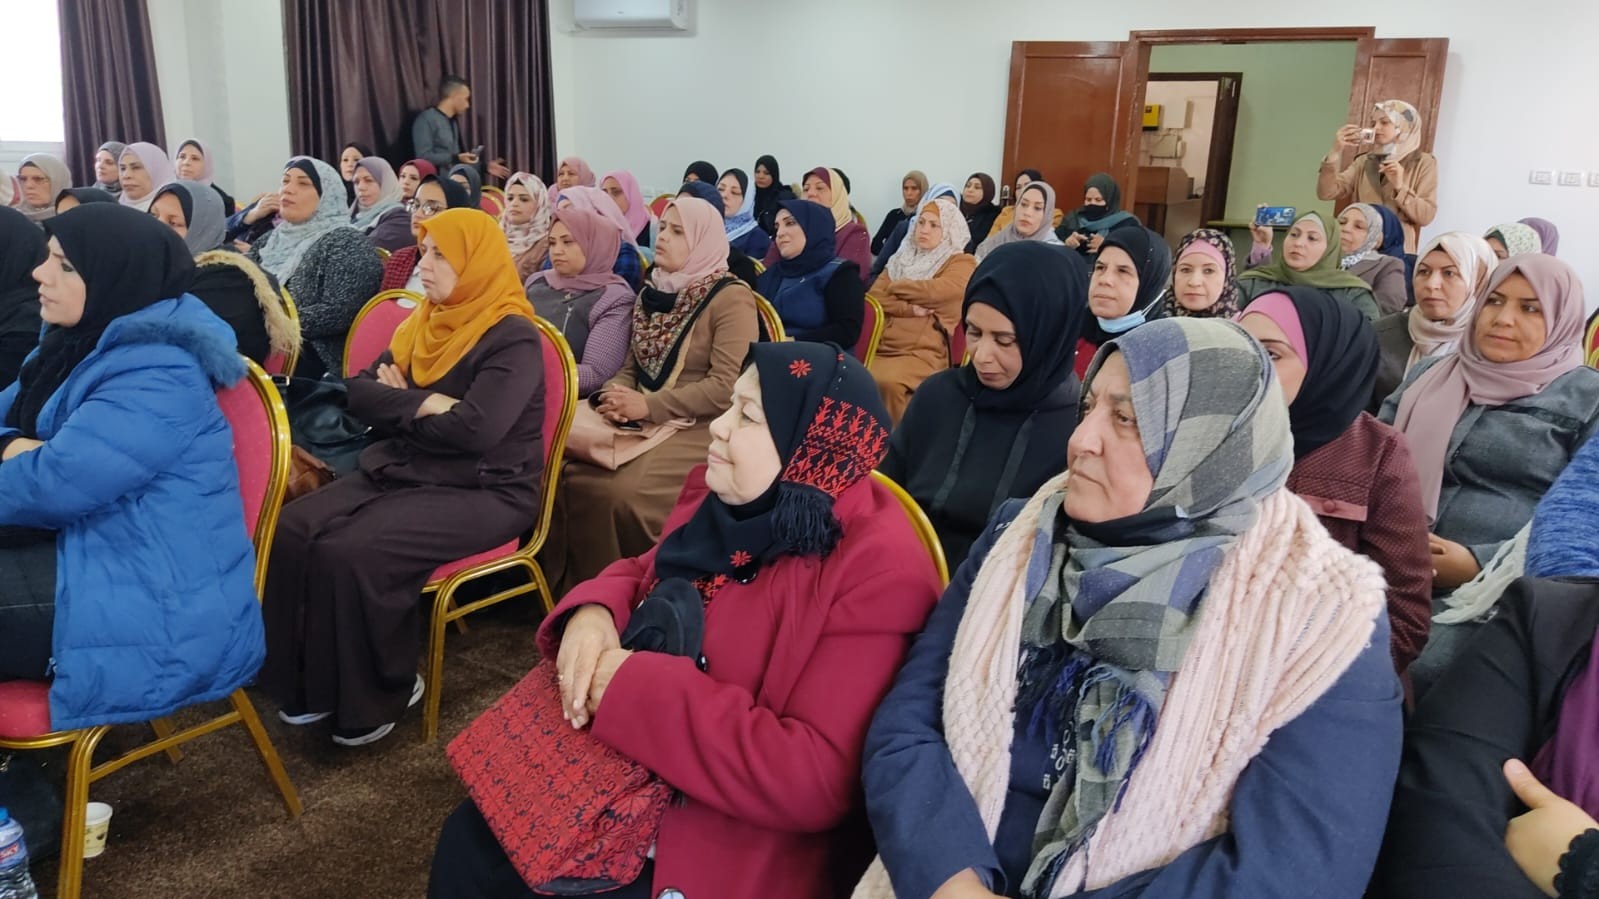 الاتحاد العام للمرأة الفلسطينية في المحافظات الجنوبية وفي الضفة الغربية يلتقيان في سلسلة اجتماعات في قطاع غزة 26.jpg